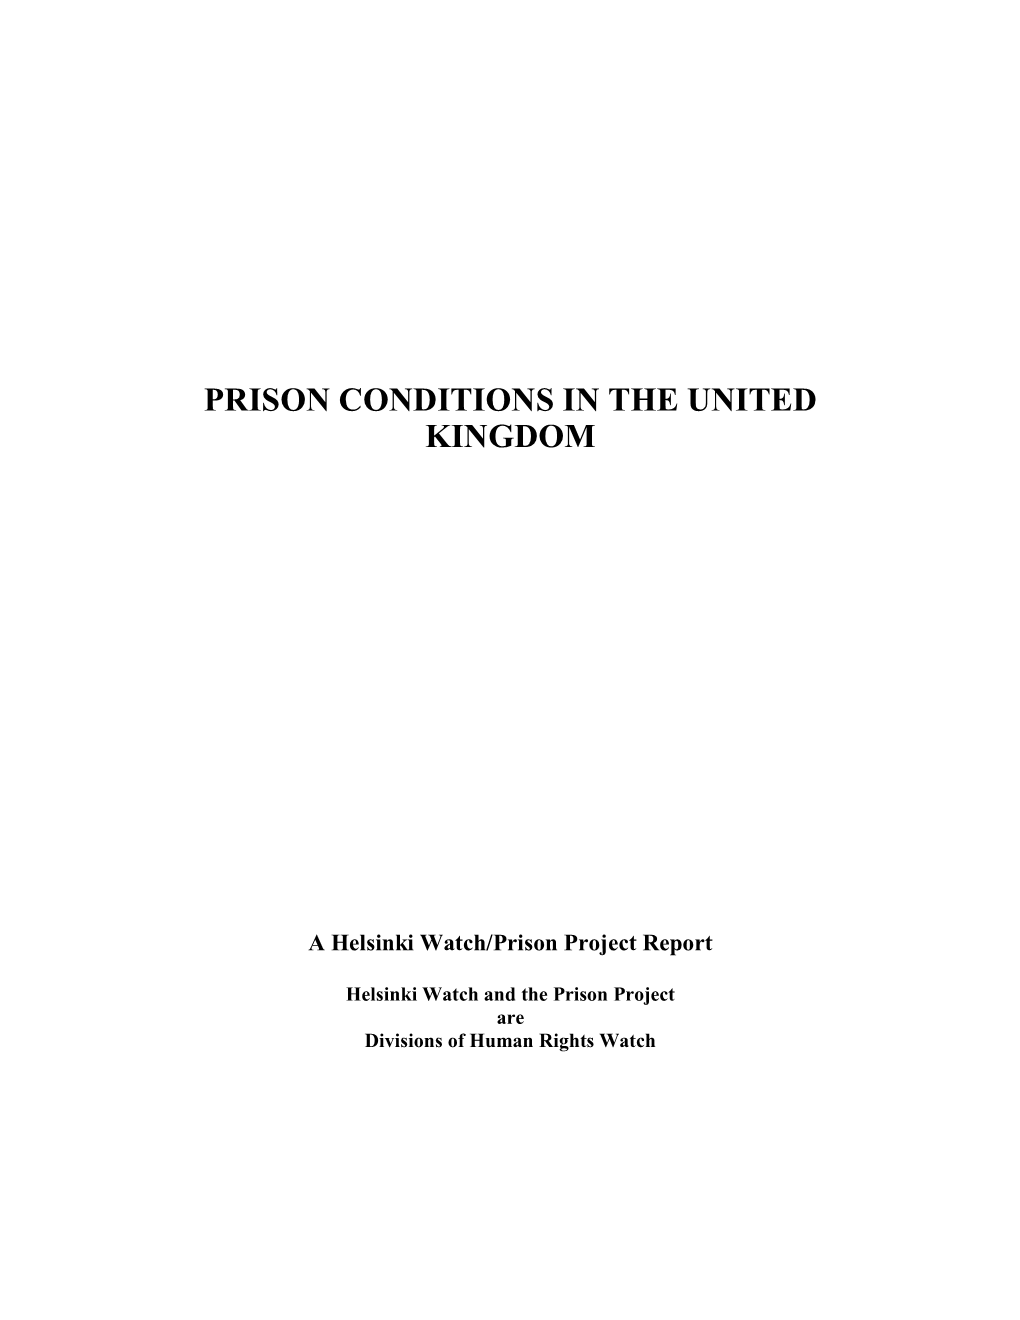 Prison Conditions in the United Kingdom